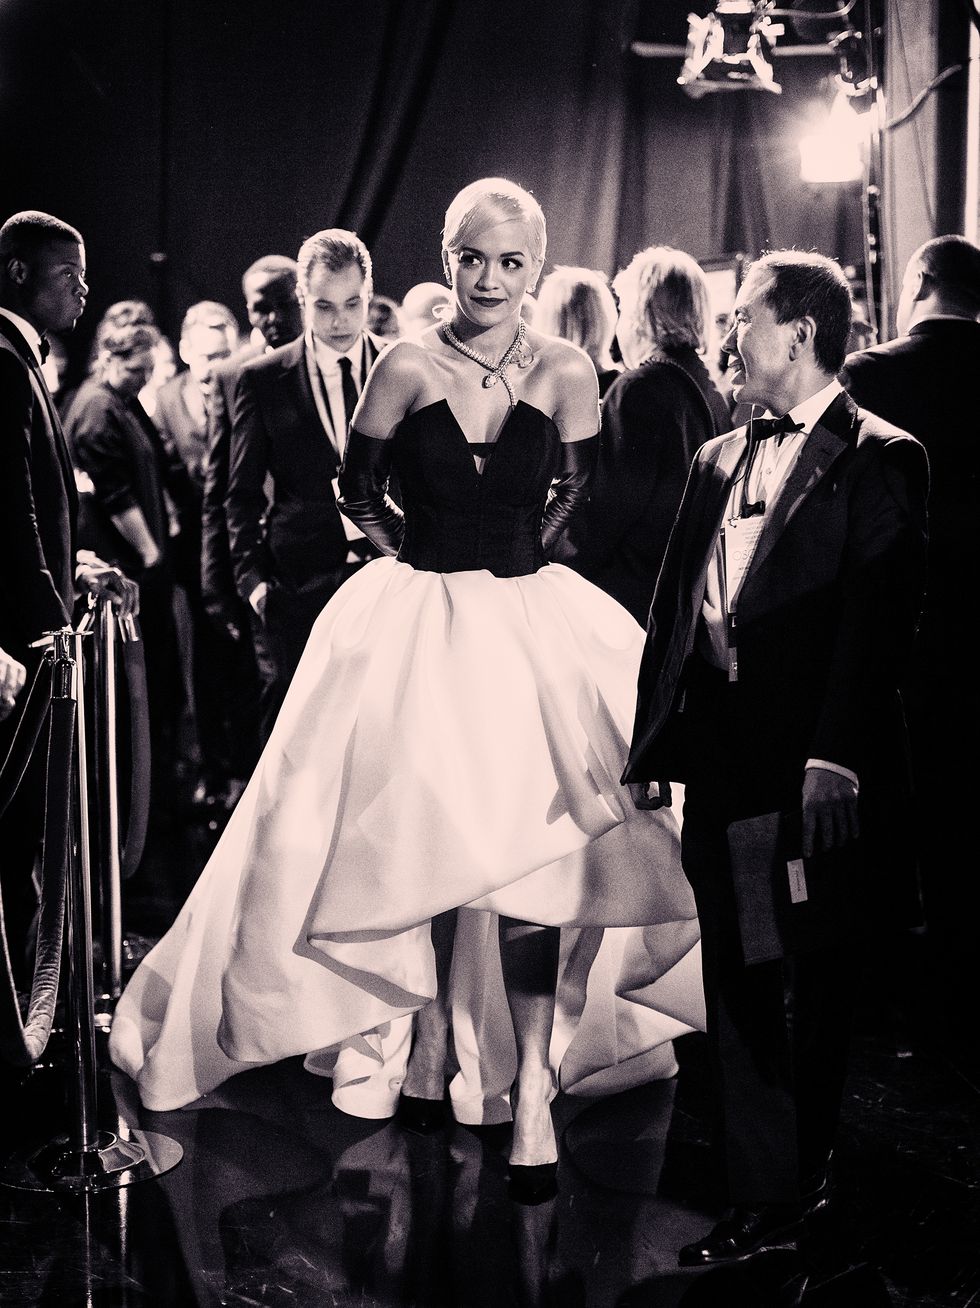 Rita Ora at the 2015 Oscars wearing Vera Wang